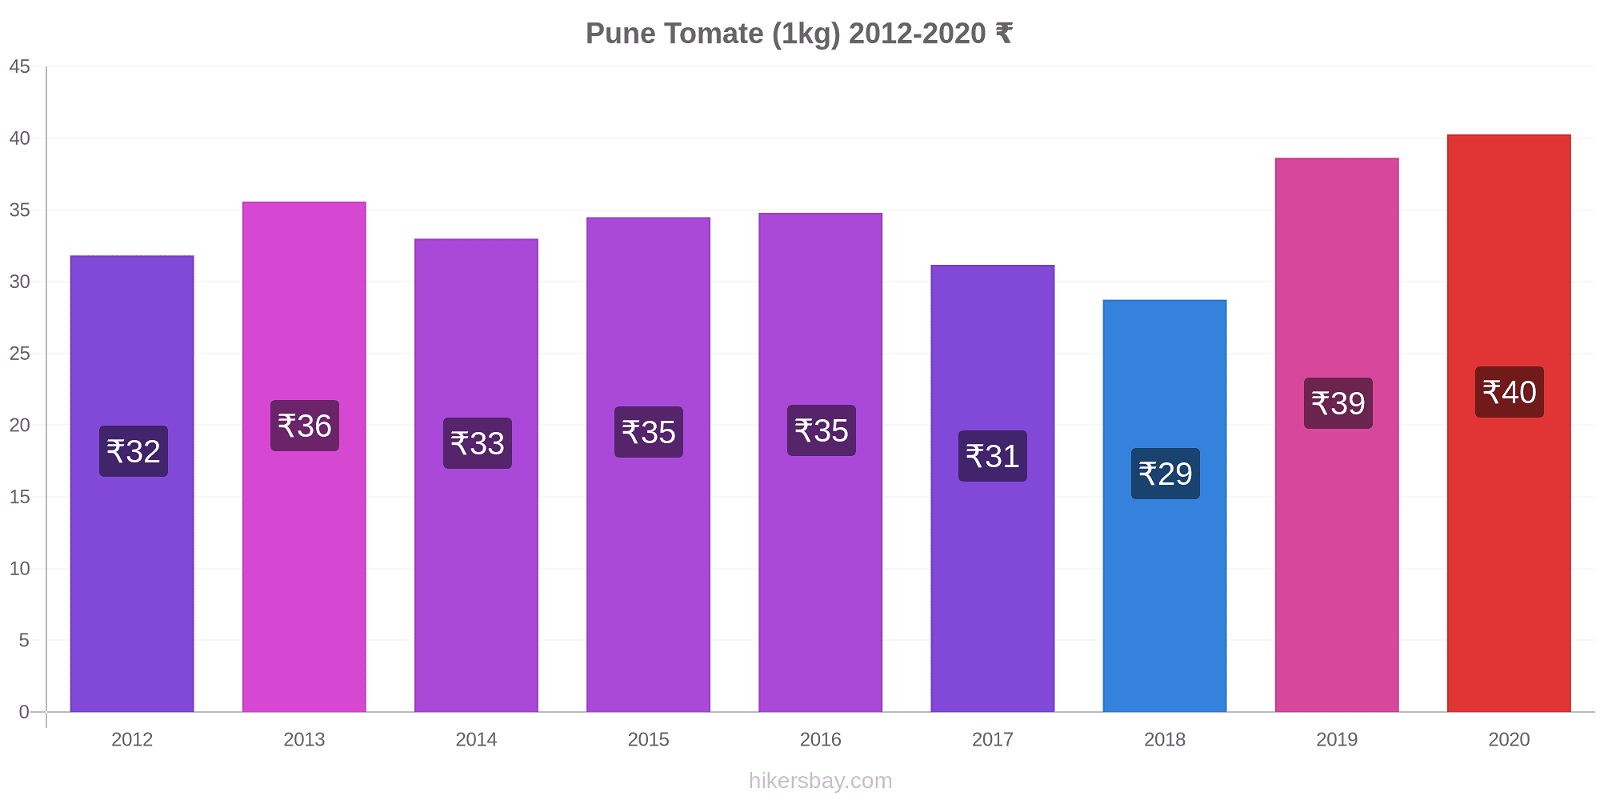 Pune Preisänderungen Tomaten (1kg) hikersbay.com